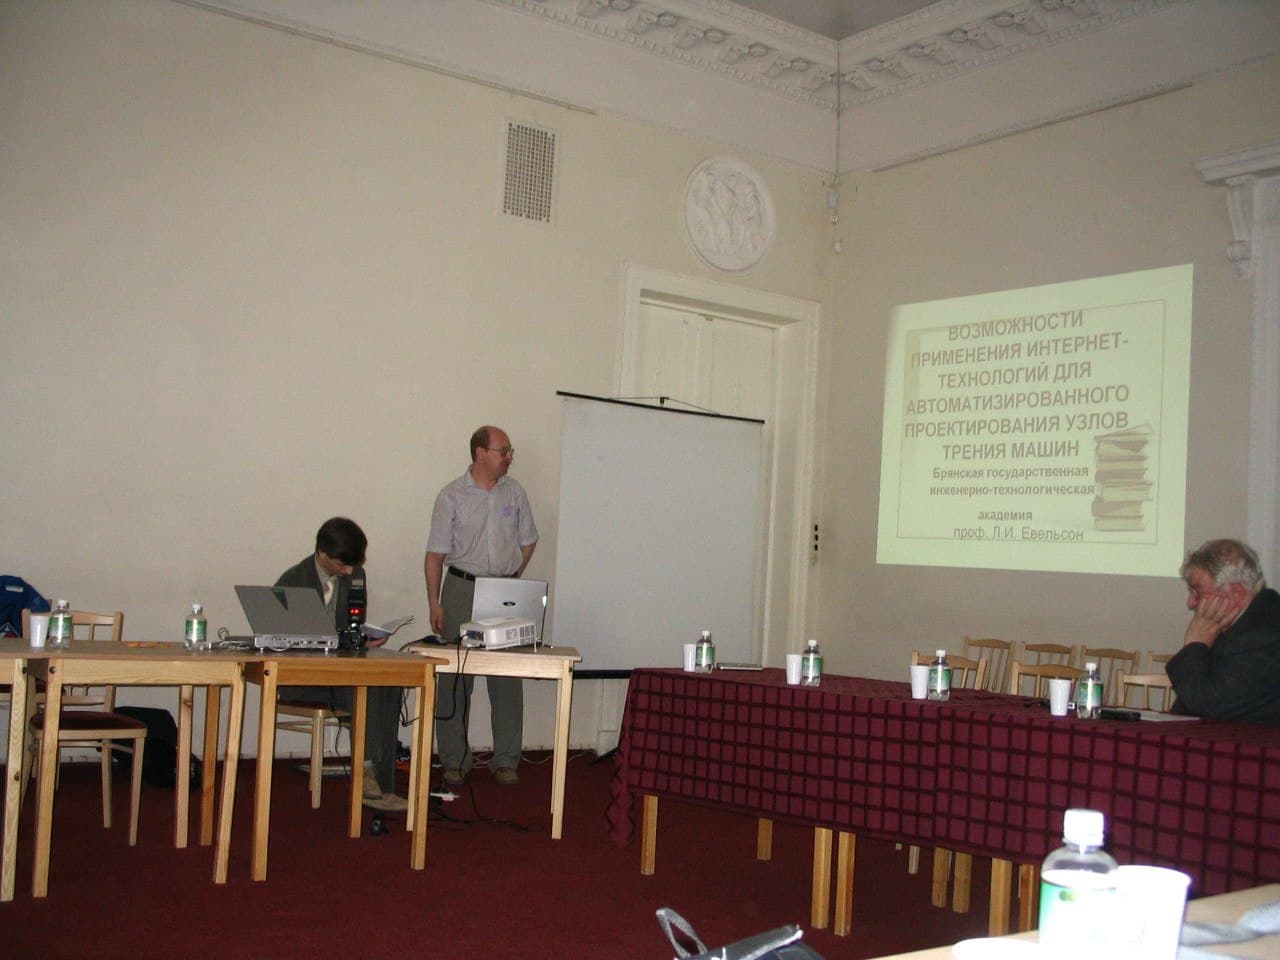 Лев Игоревич Евельсон выступает с докладом на Международной конференции в г. Пушкин